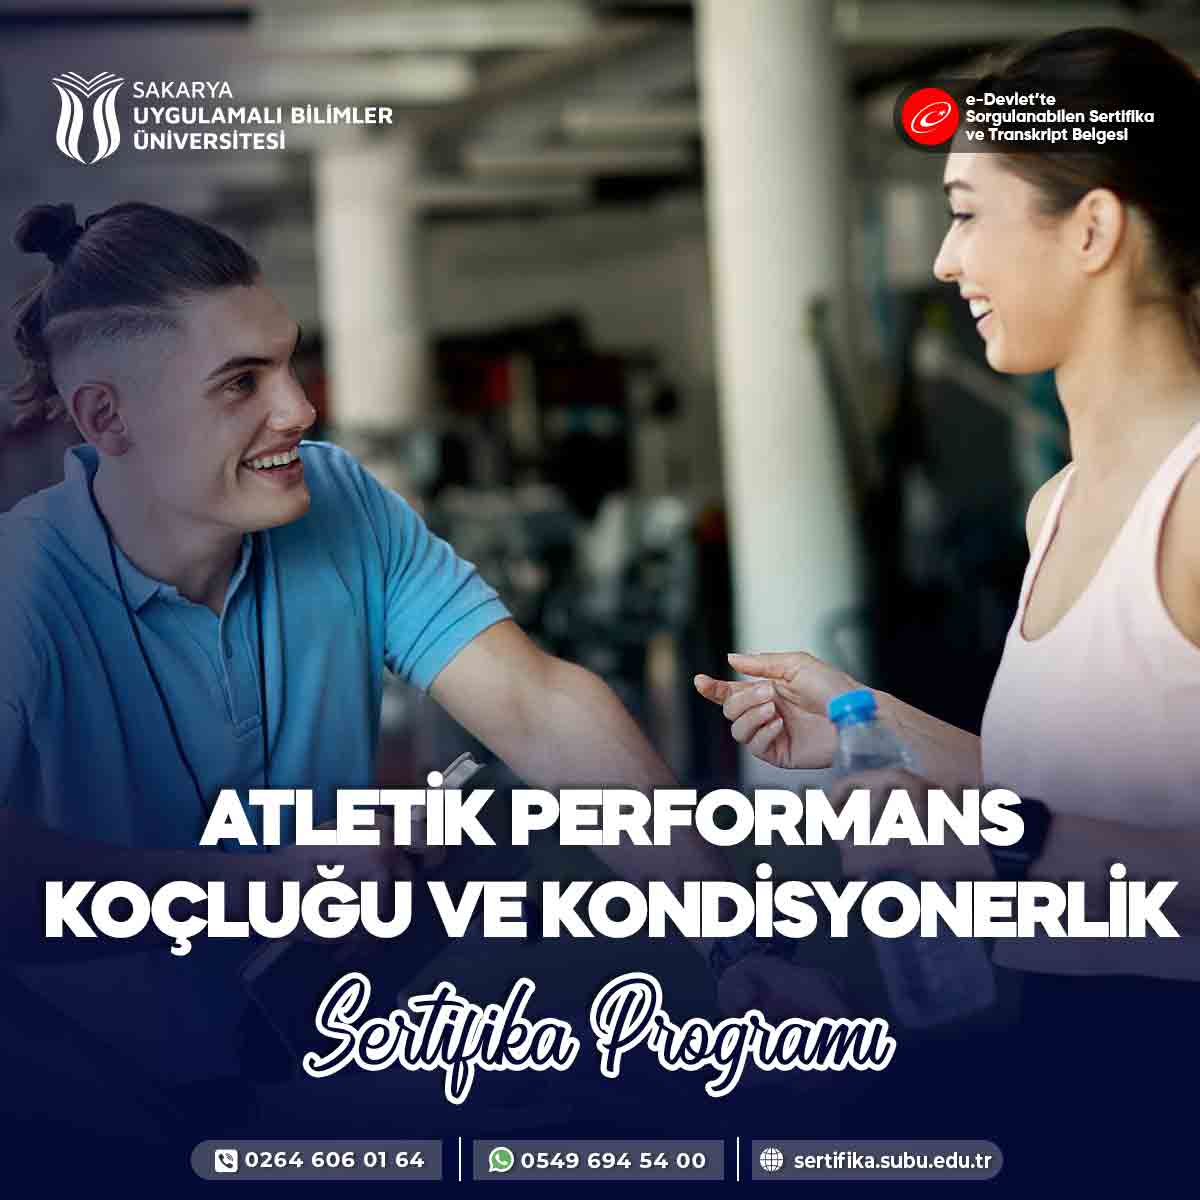 Atletik Performans Koçluğu ve Kondisyonerlik Eğitimi Sertifika Programı